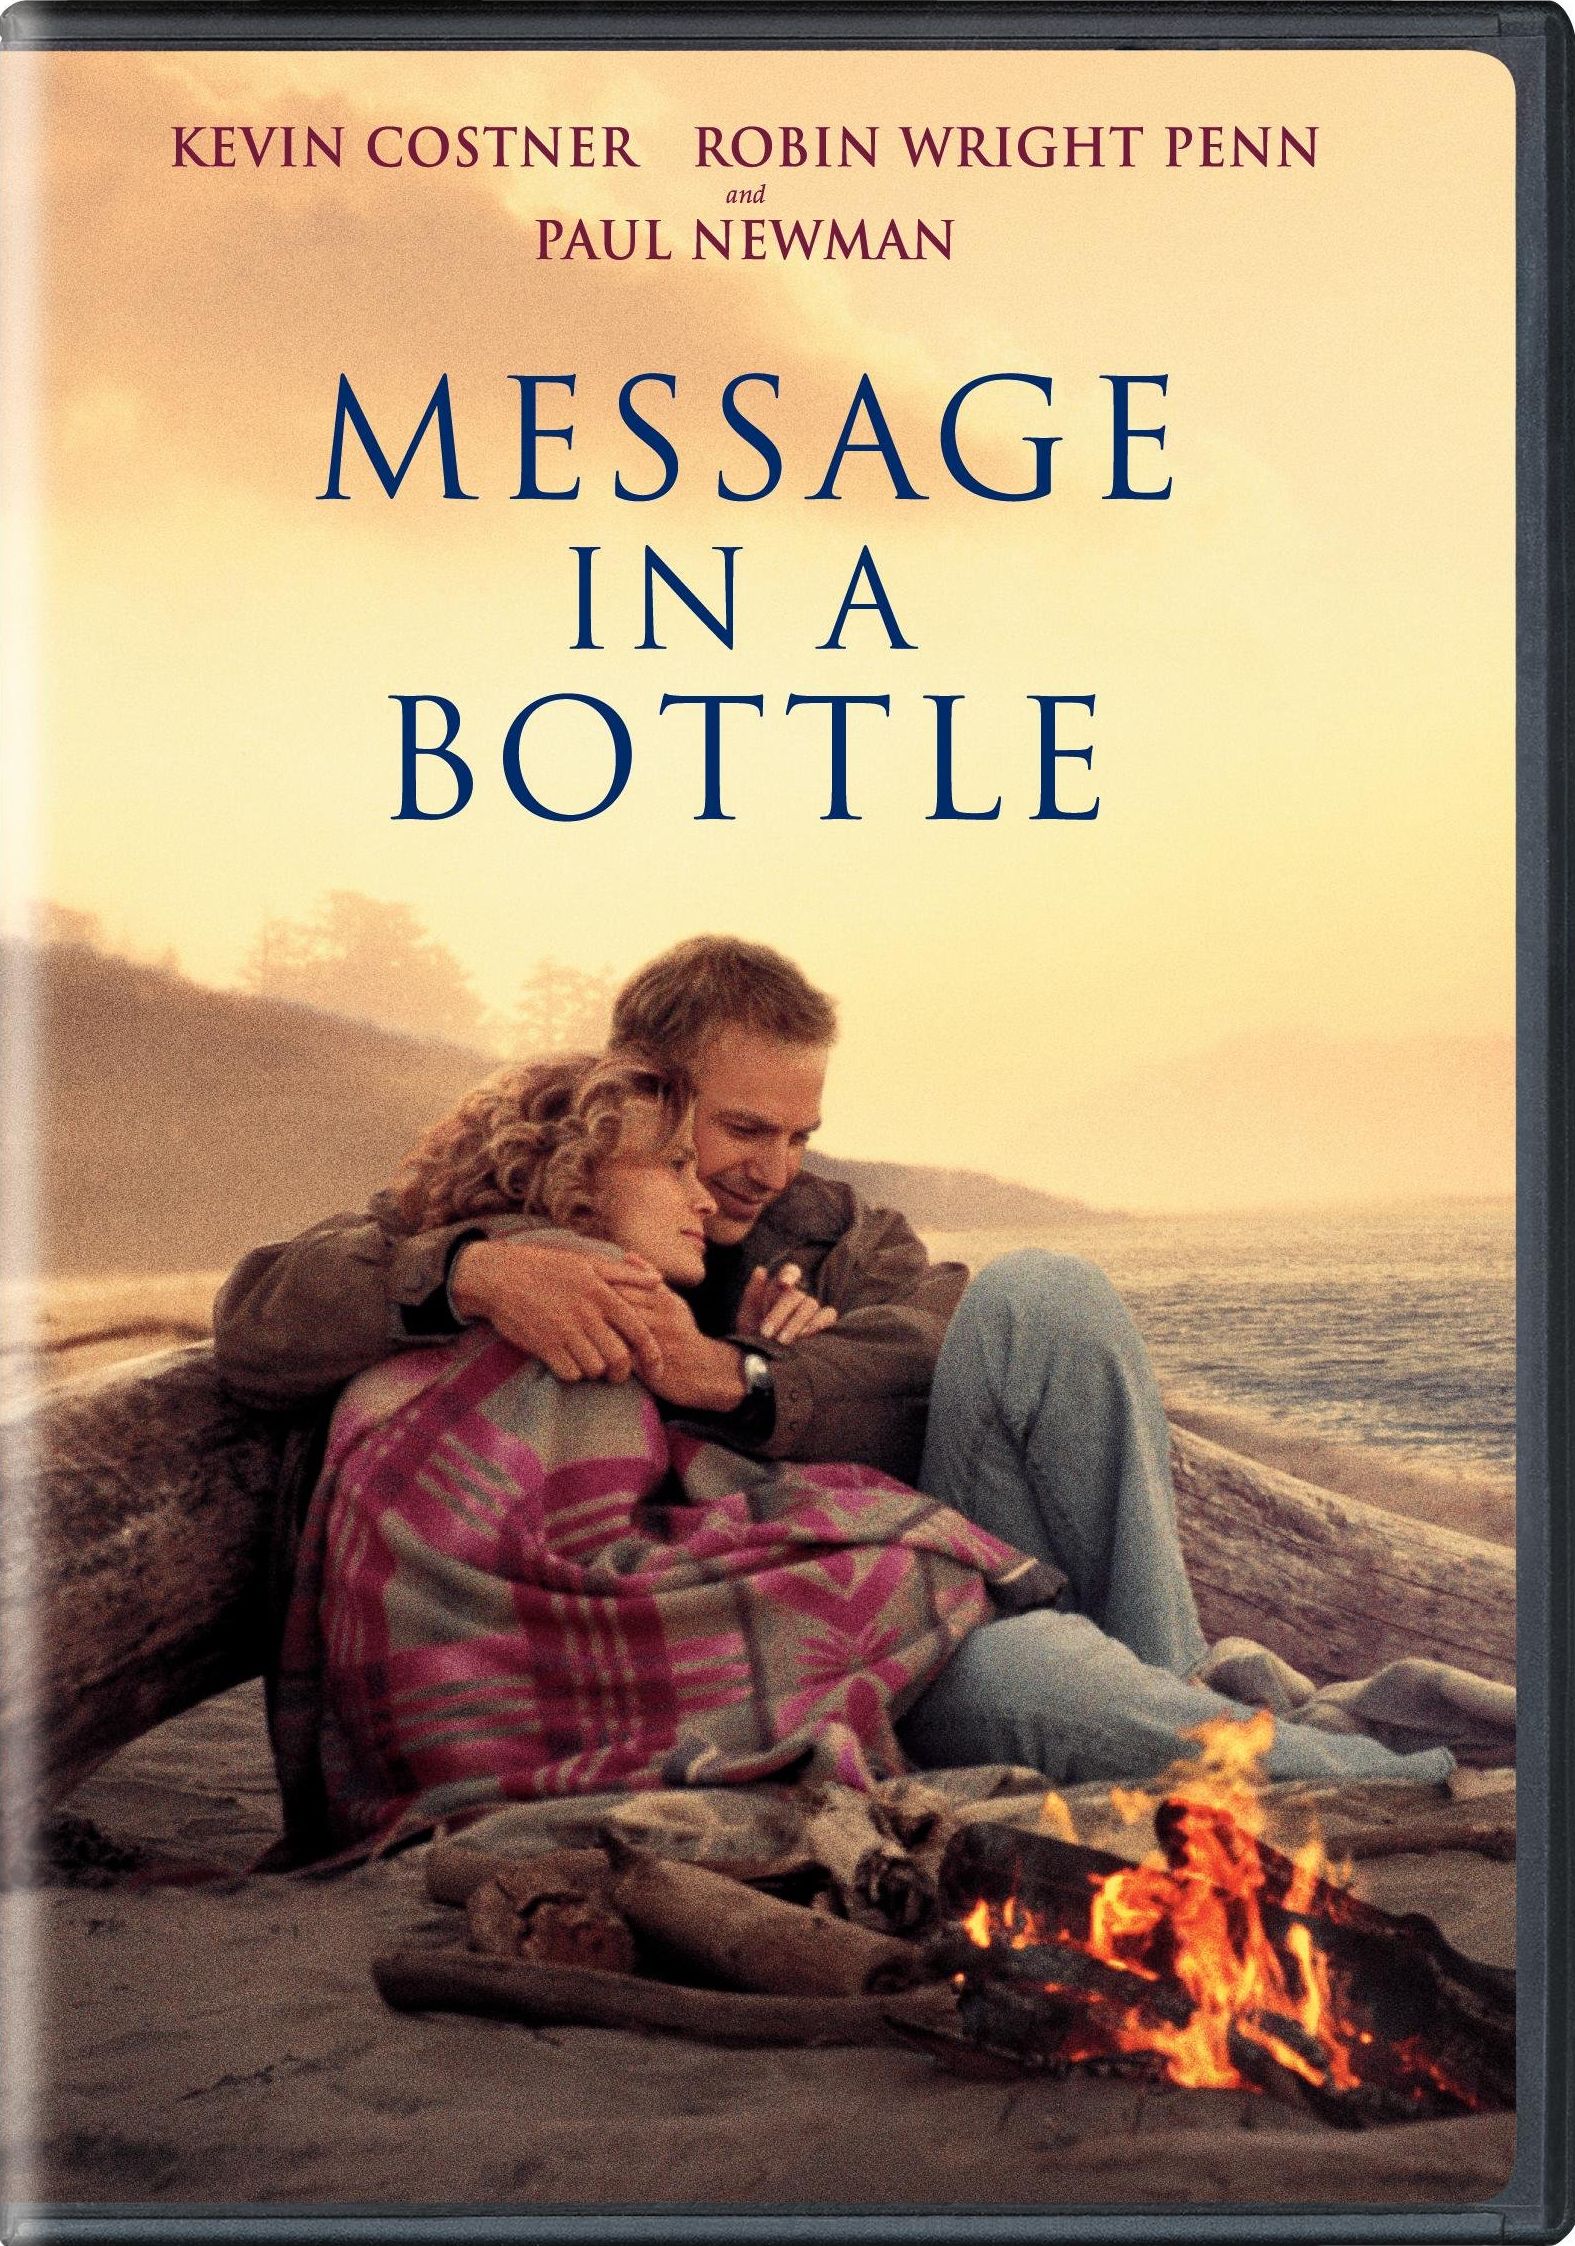 Message in a Bottle DVD Release Date1575 x 2246